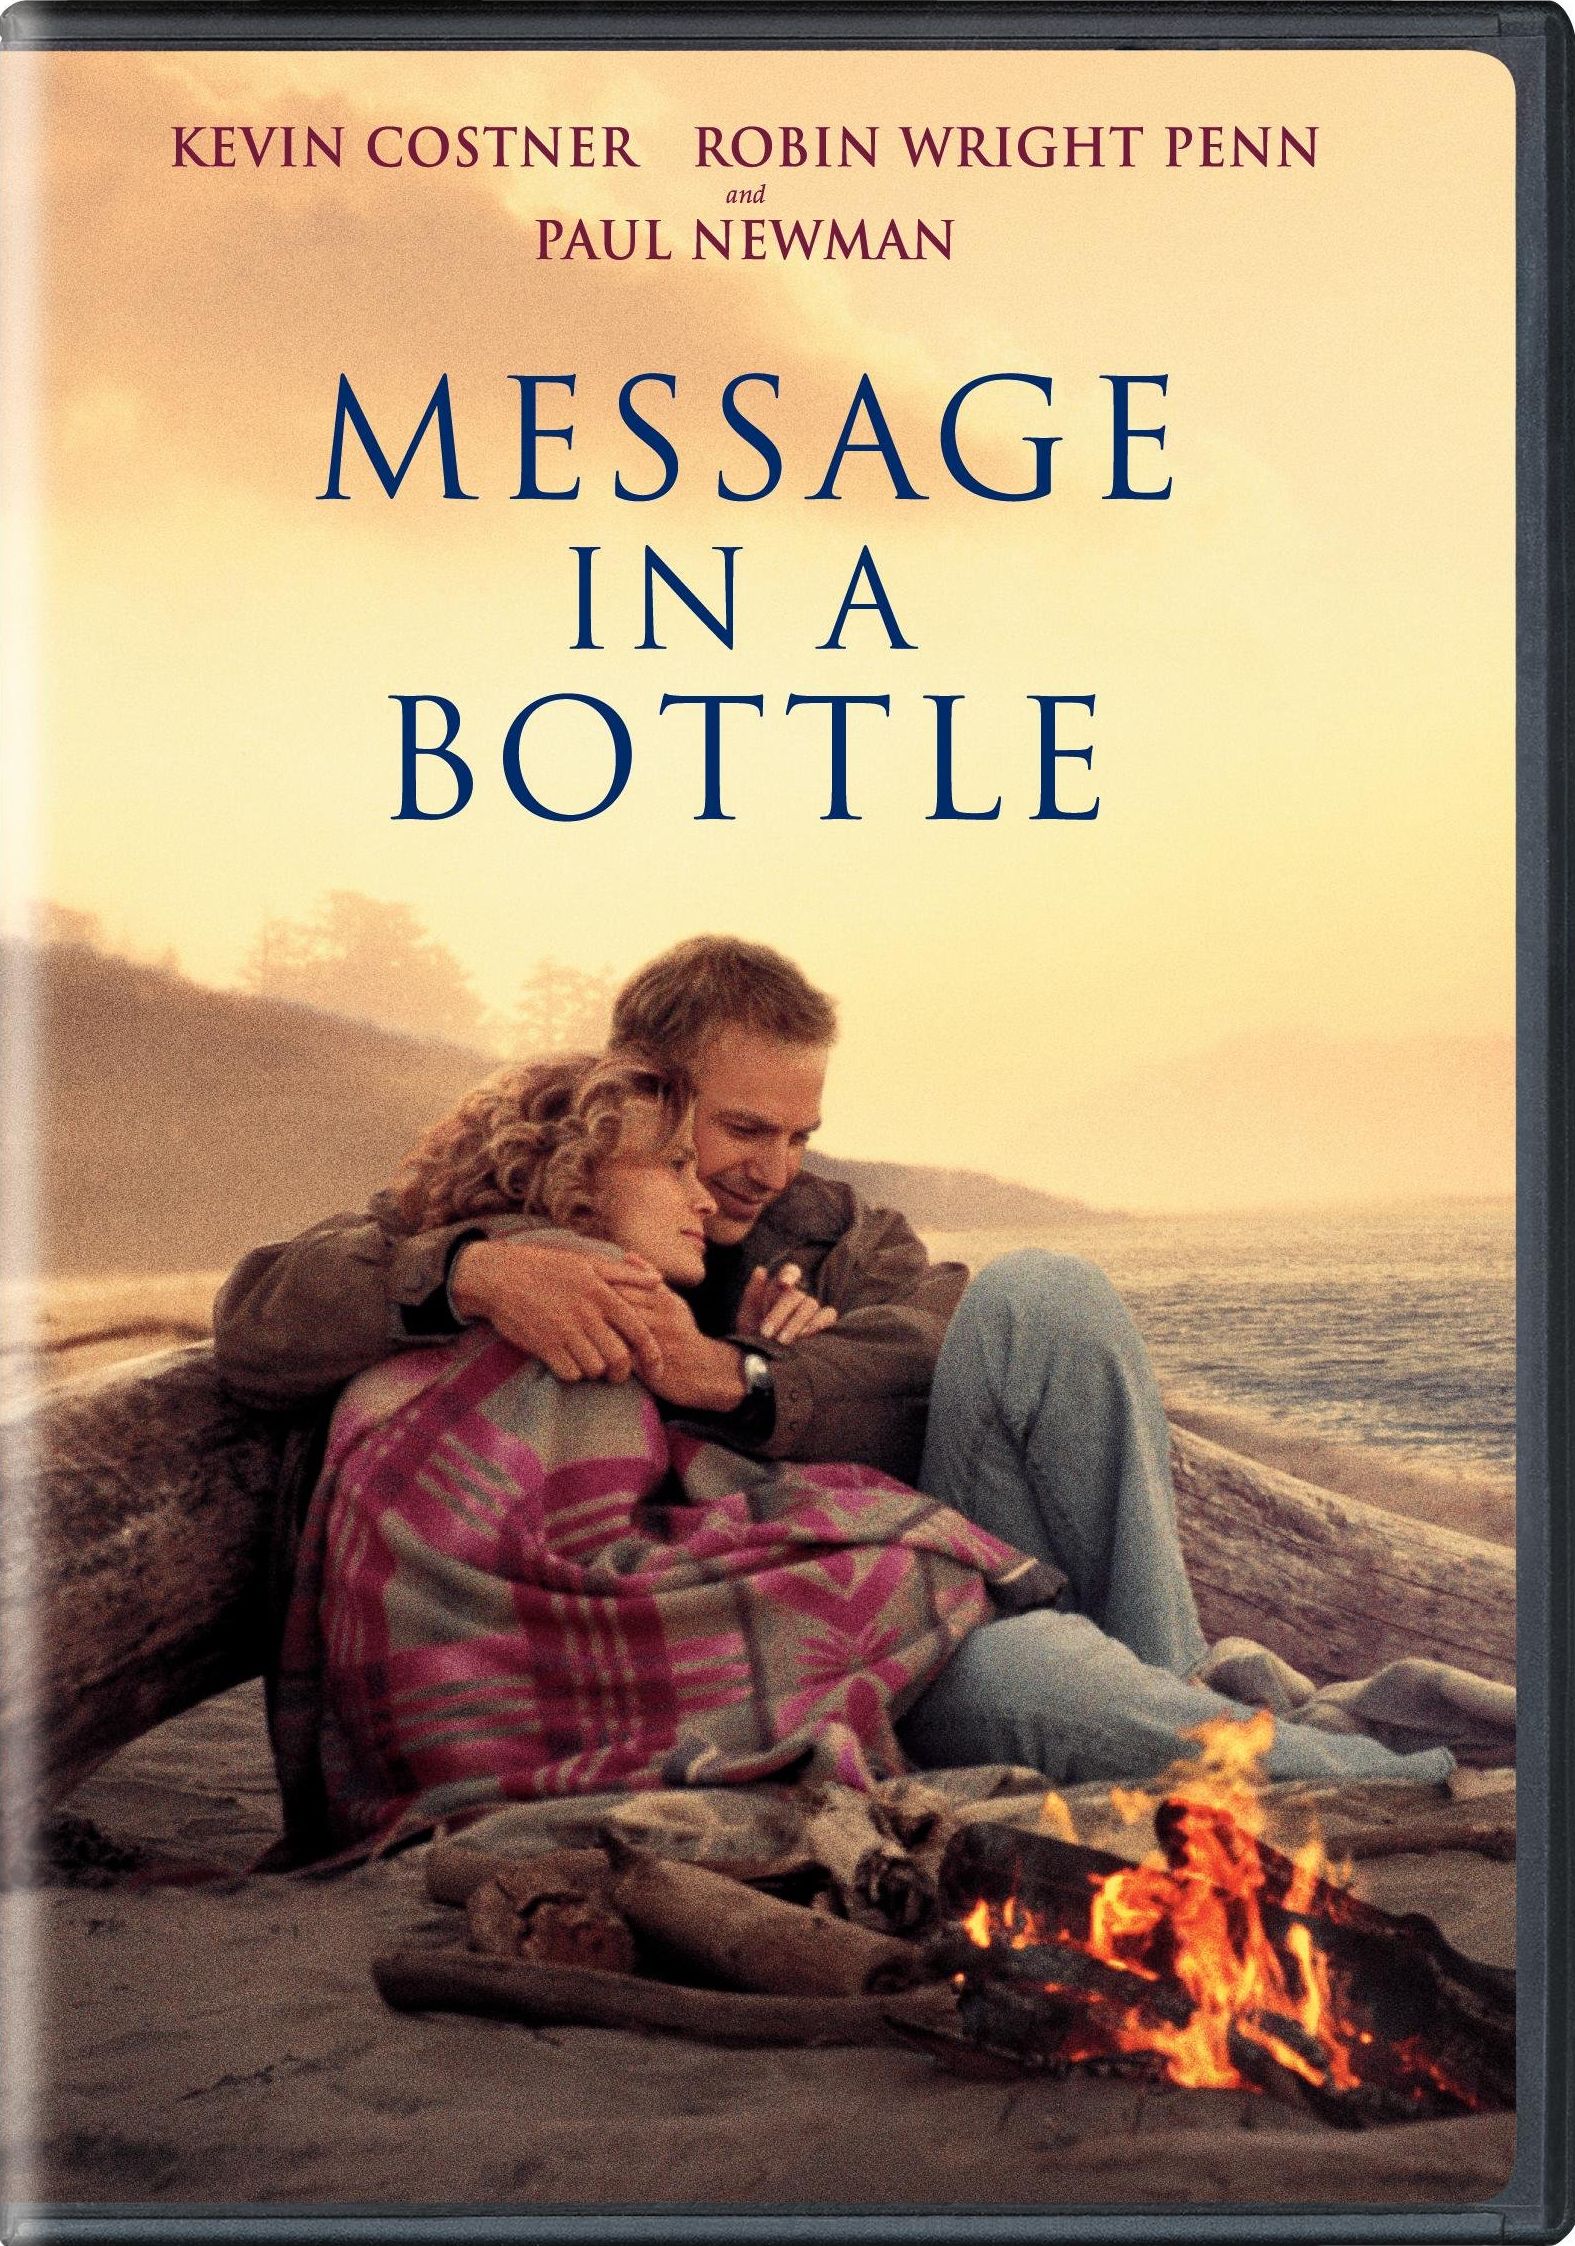 Message in a Bottle DVD Release Date1575 x 2246